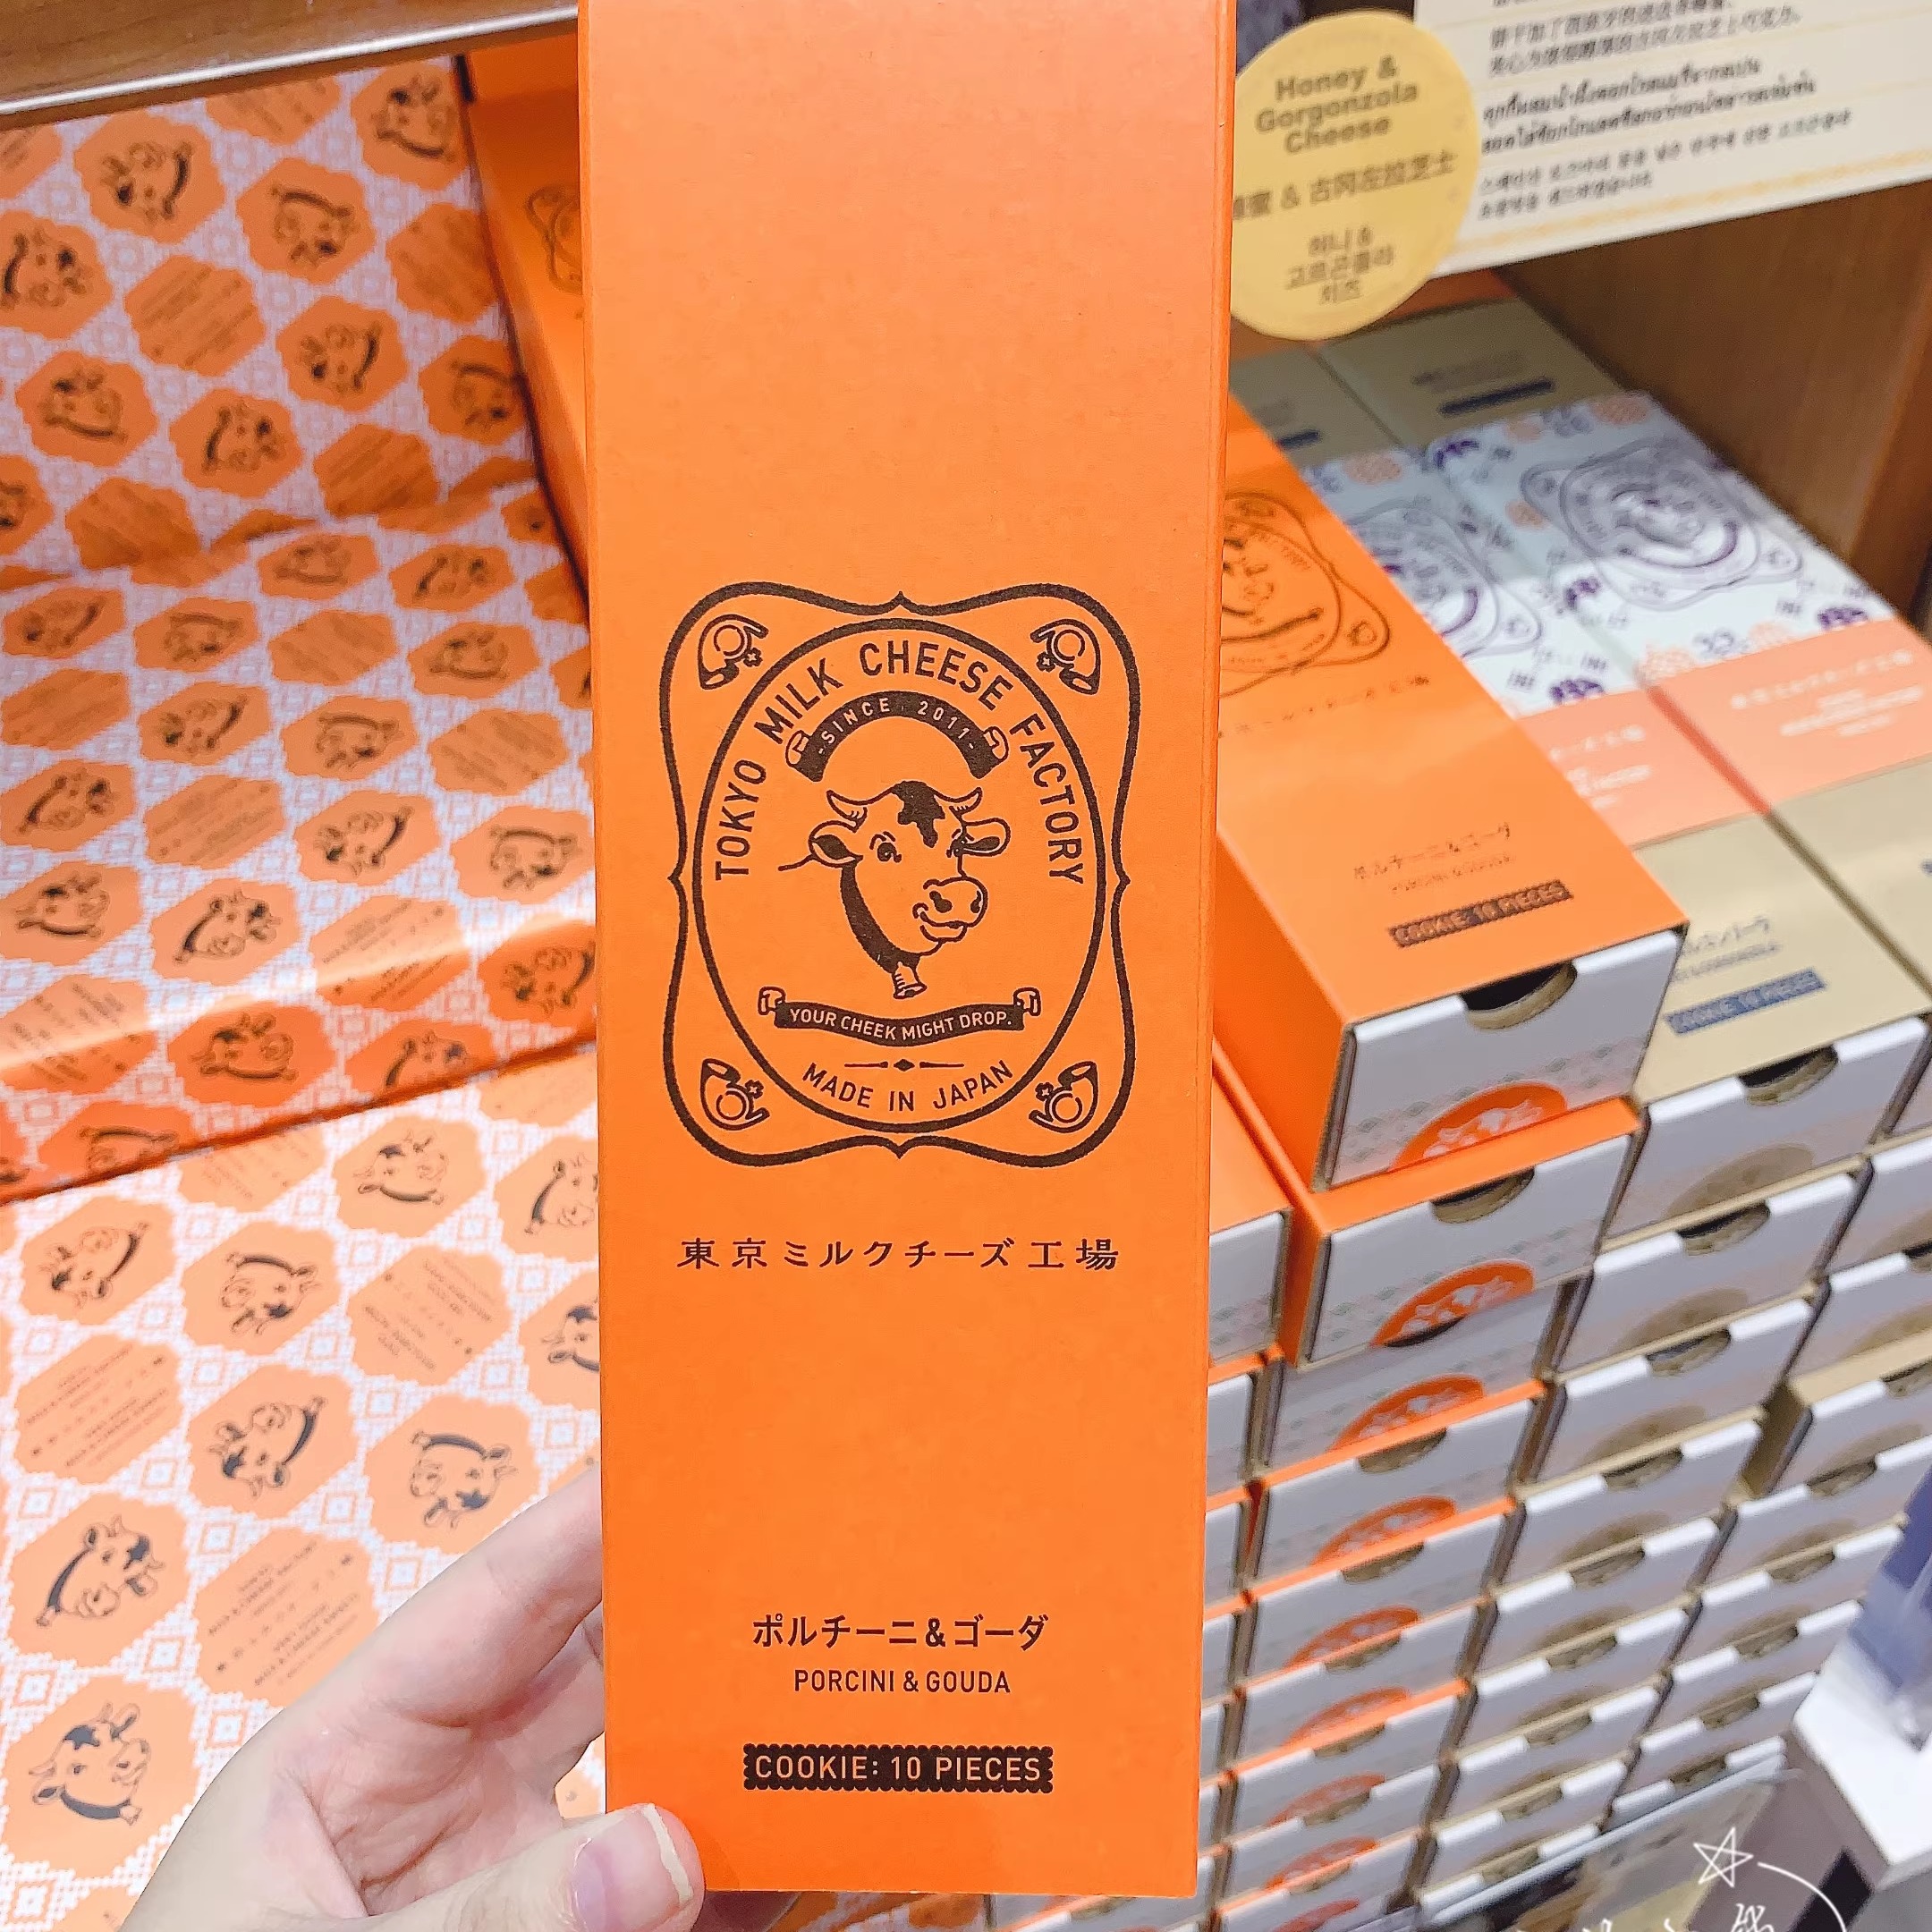 日本北海道进口 东京牛奶工厂牛头牛奶蜂蜜芝士海盐夹心饼干零食